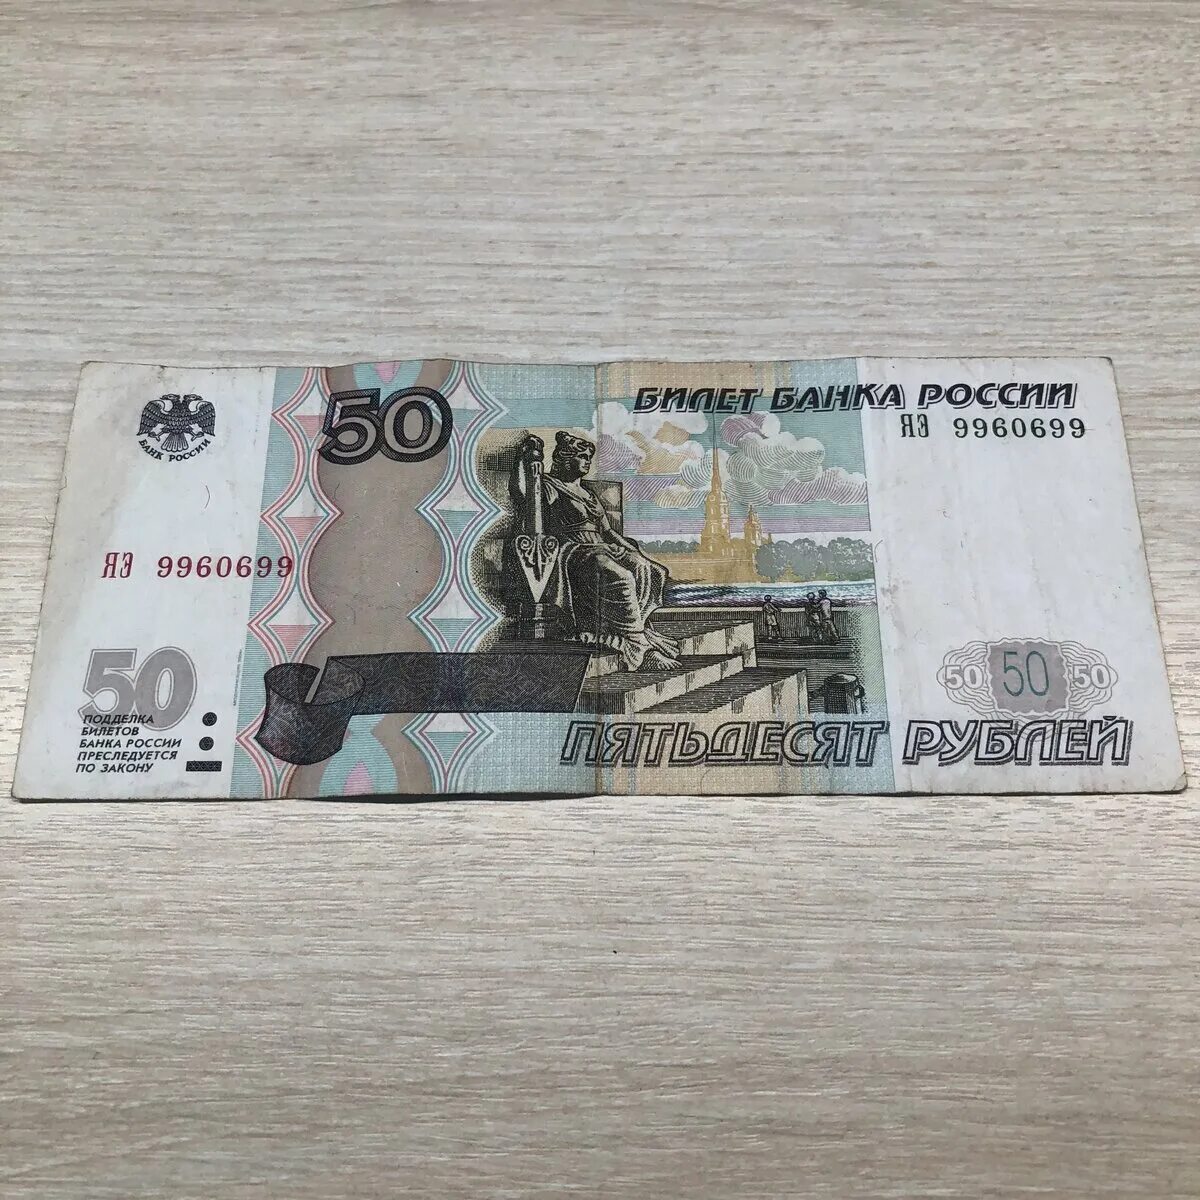 35 50 в рублях. 50 Рублей. Купюра 50 рублей. Банкнота 50 рублей. 50 Рублей номер.